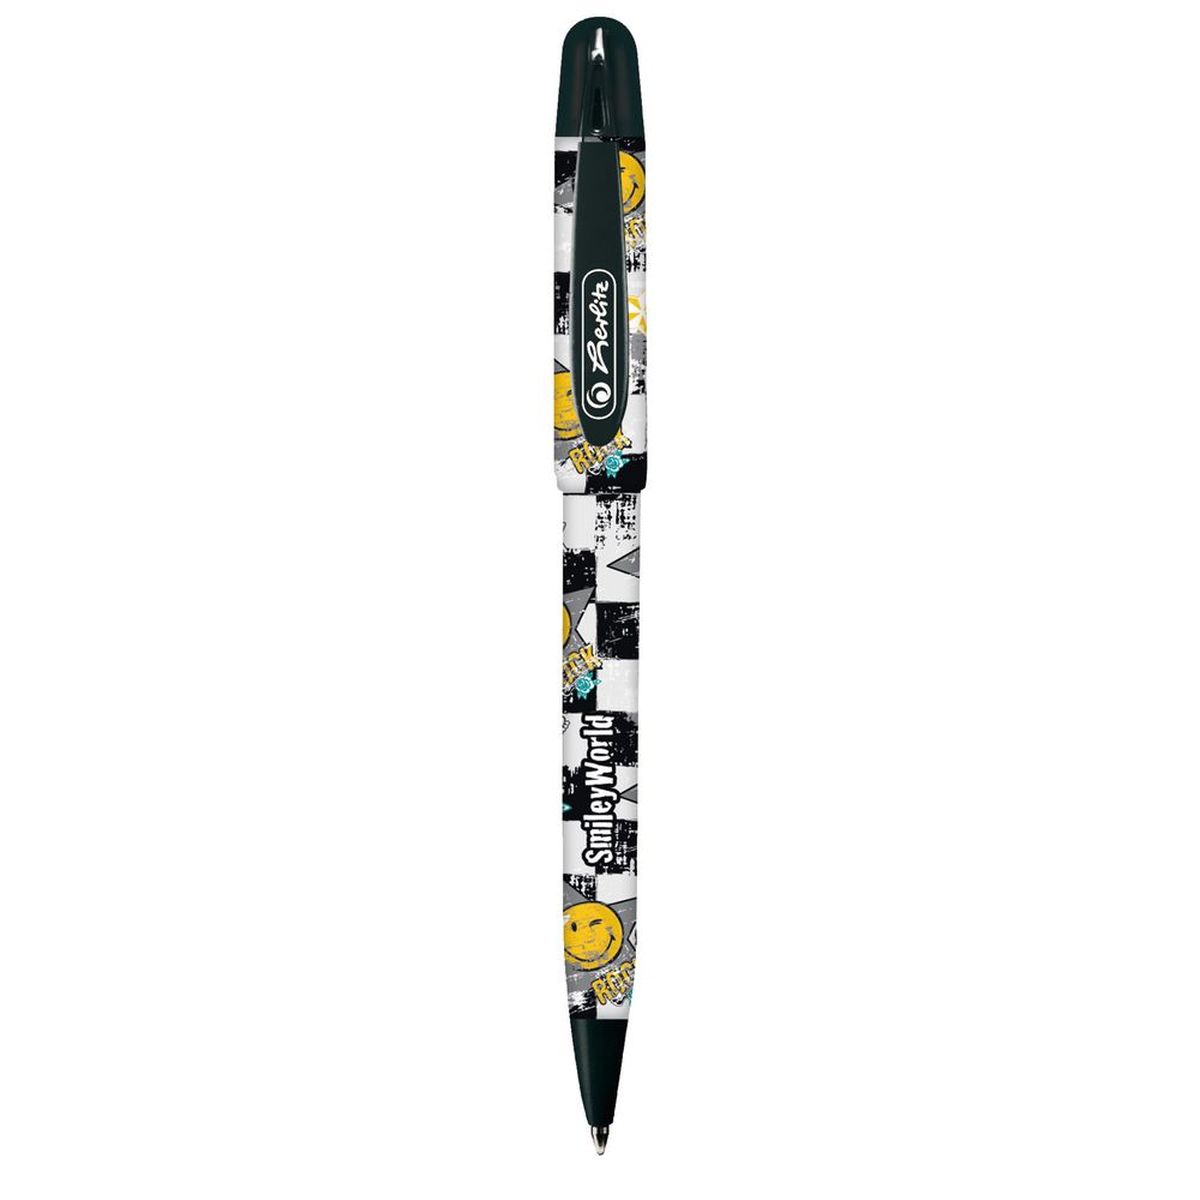 Шариковая ручка Herlitz Smiley World в пластиковом корпусе станет незаменимым атрибутом любого школьника.Она долго пишет благодаря увеличенному запасу чернил и возможности замены стержня.Цвет чернил: синий.